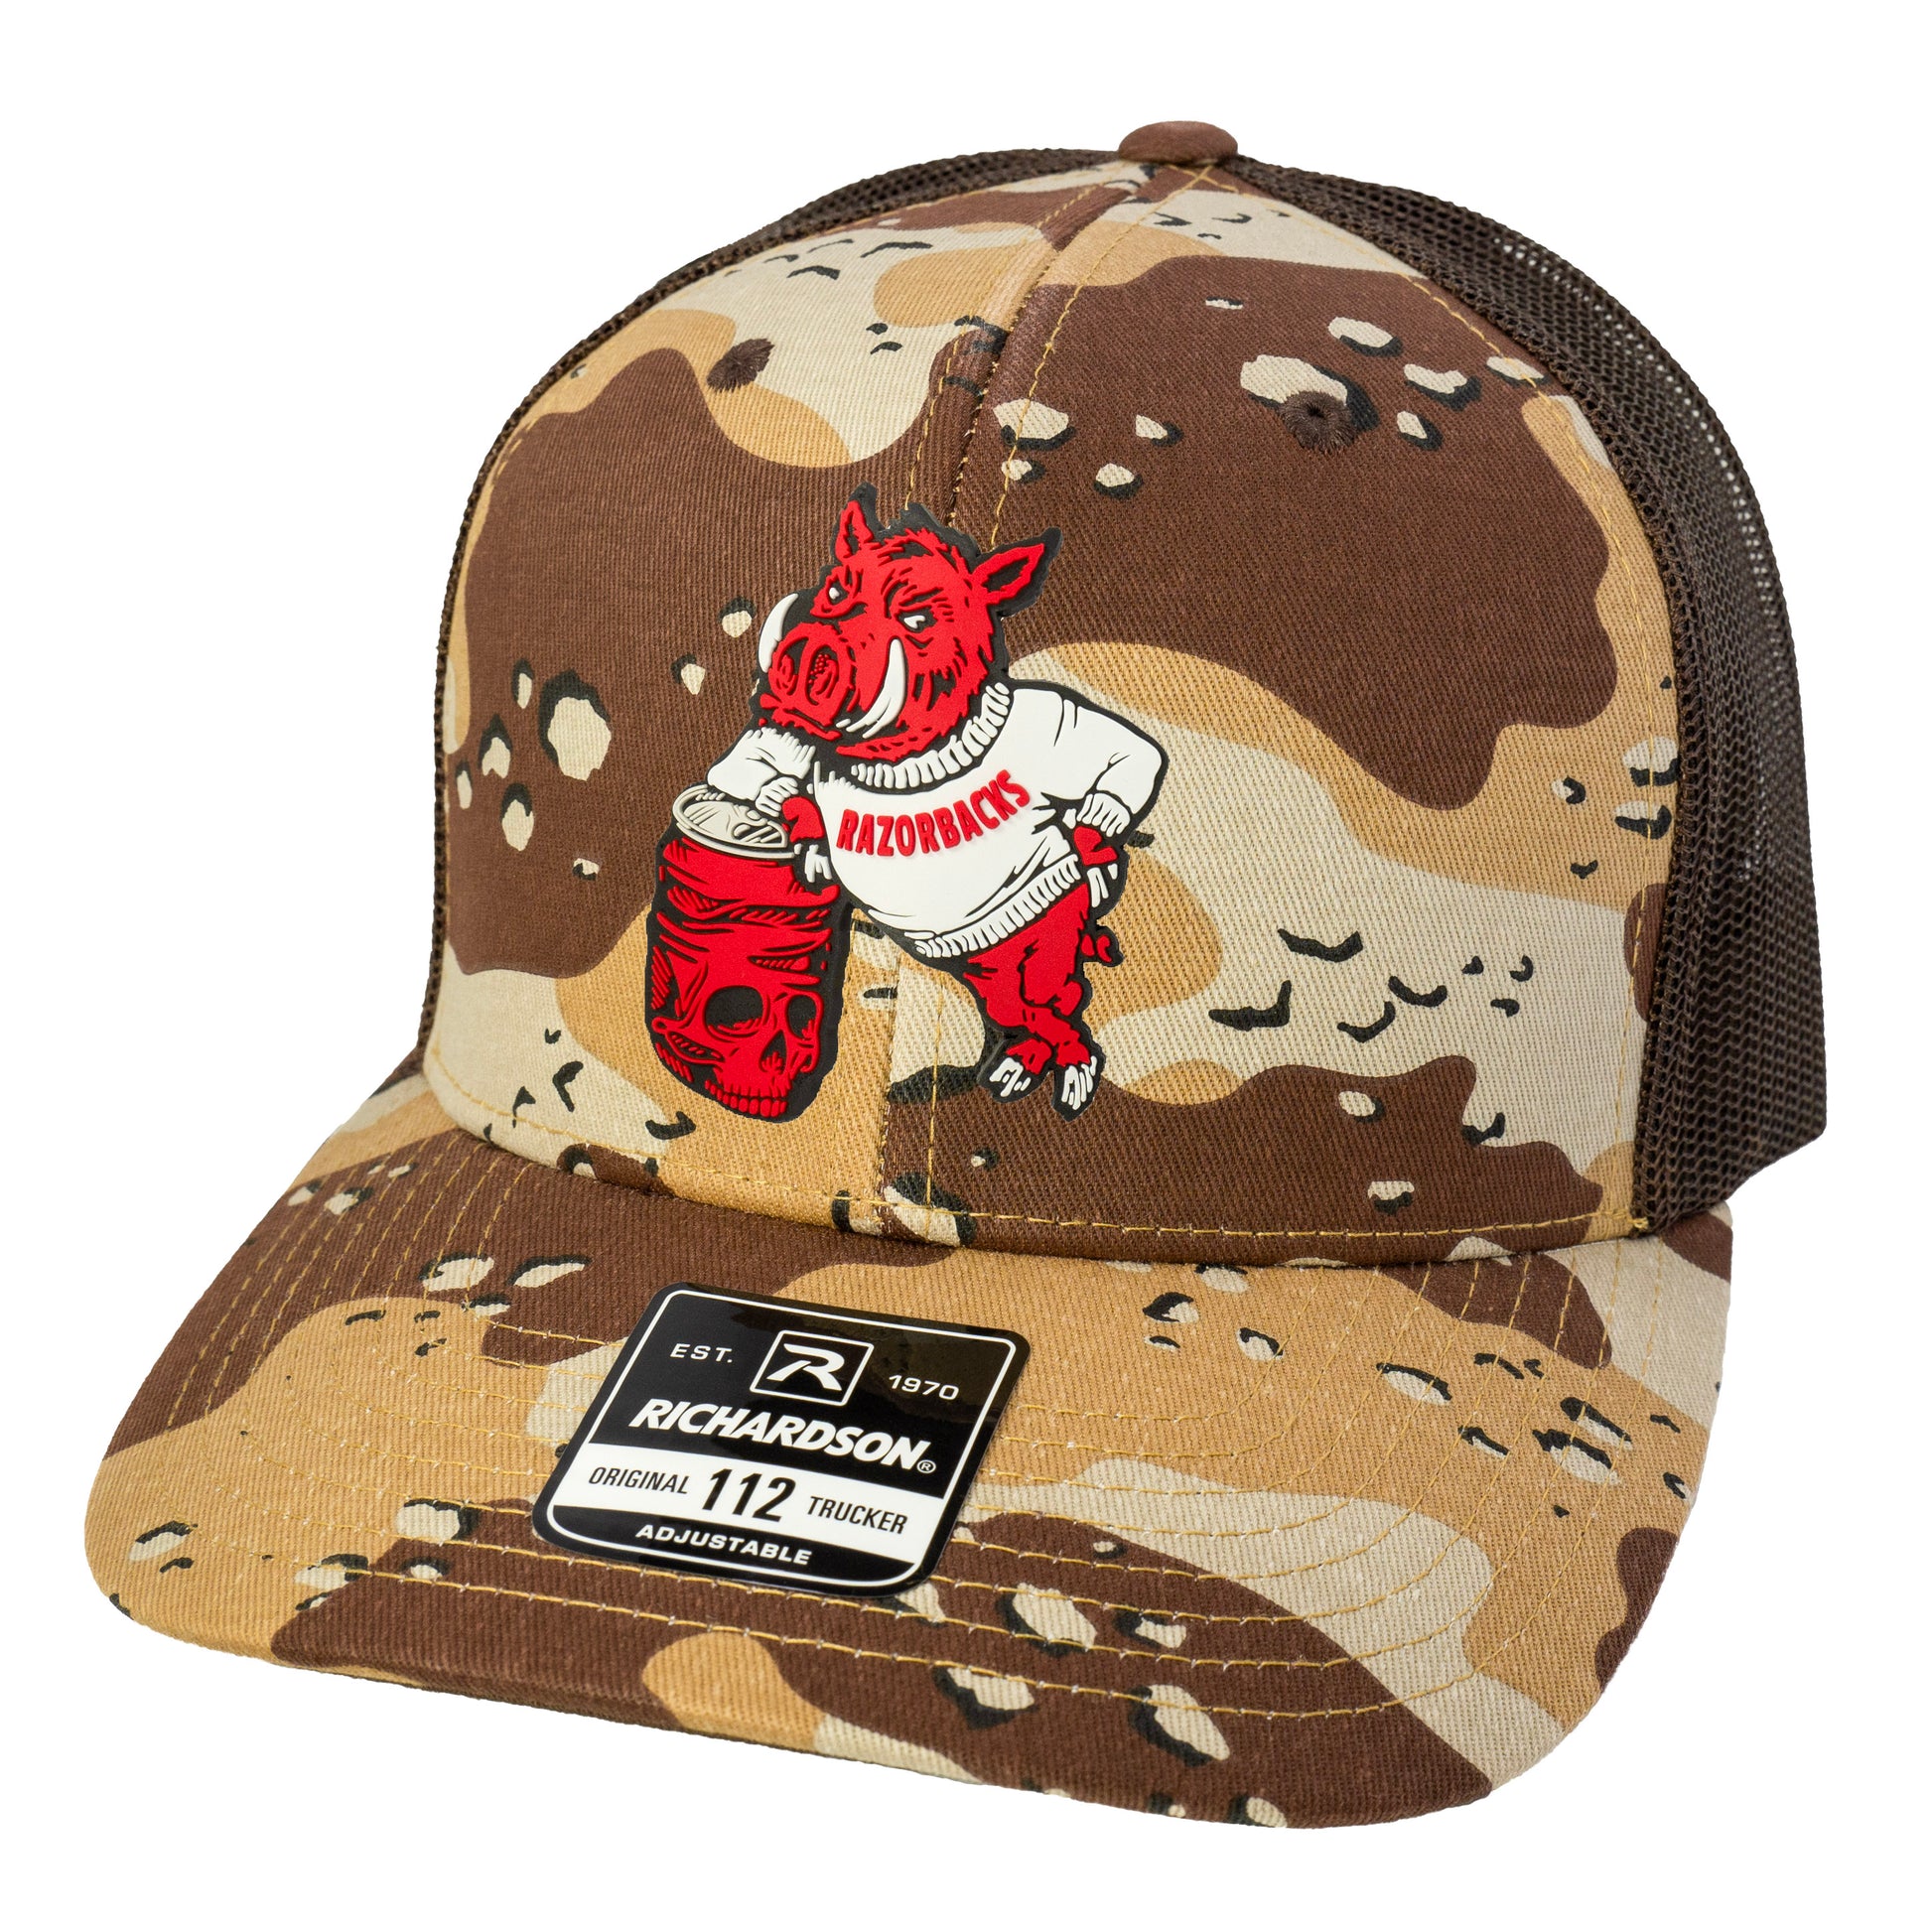 Arkansas Razorbacks- Skull Crushers 3D Patterned Snapback Trucker Hat- Desert Camo/ Brown - Ten Gallon Hat Co.